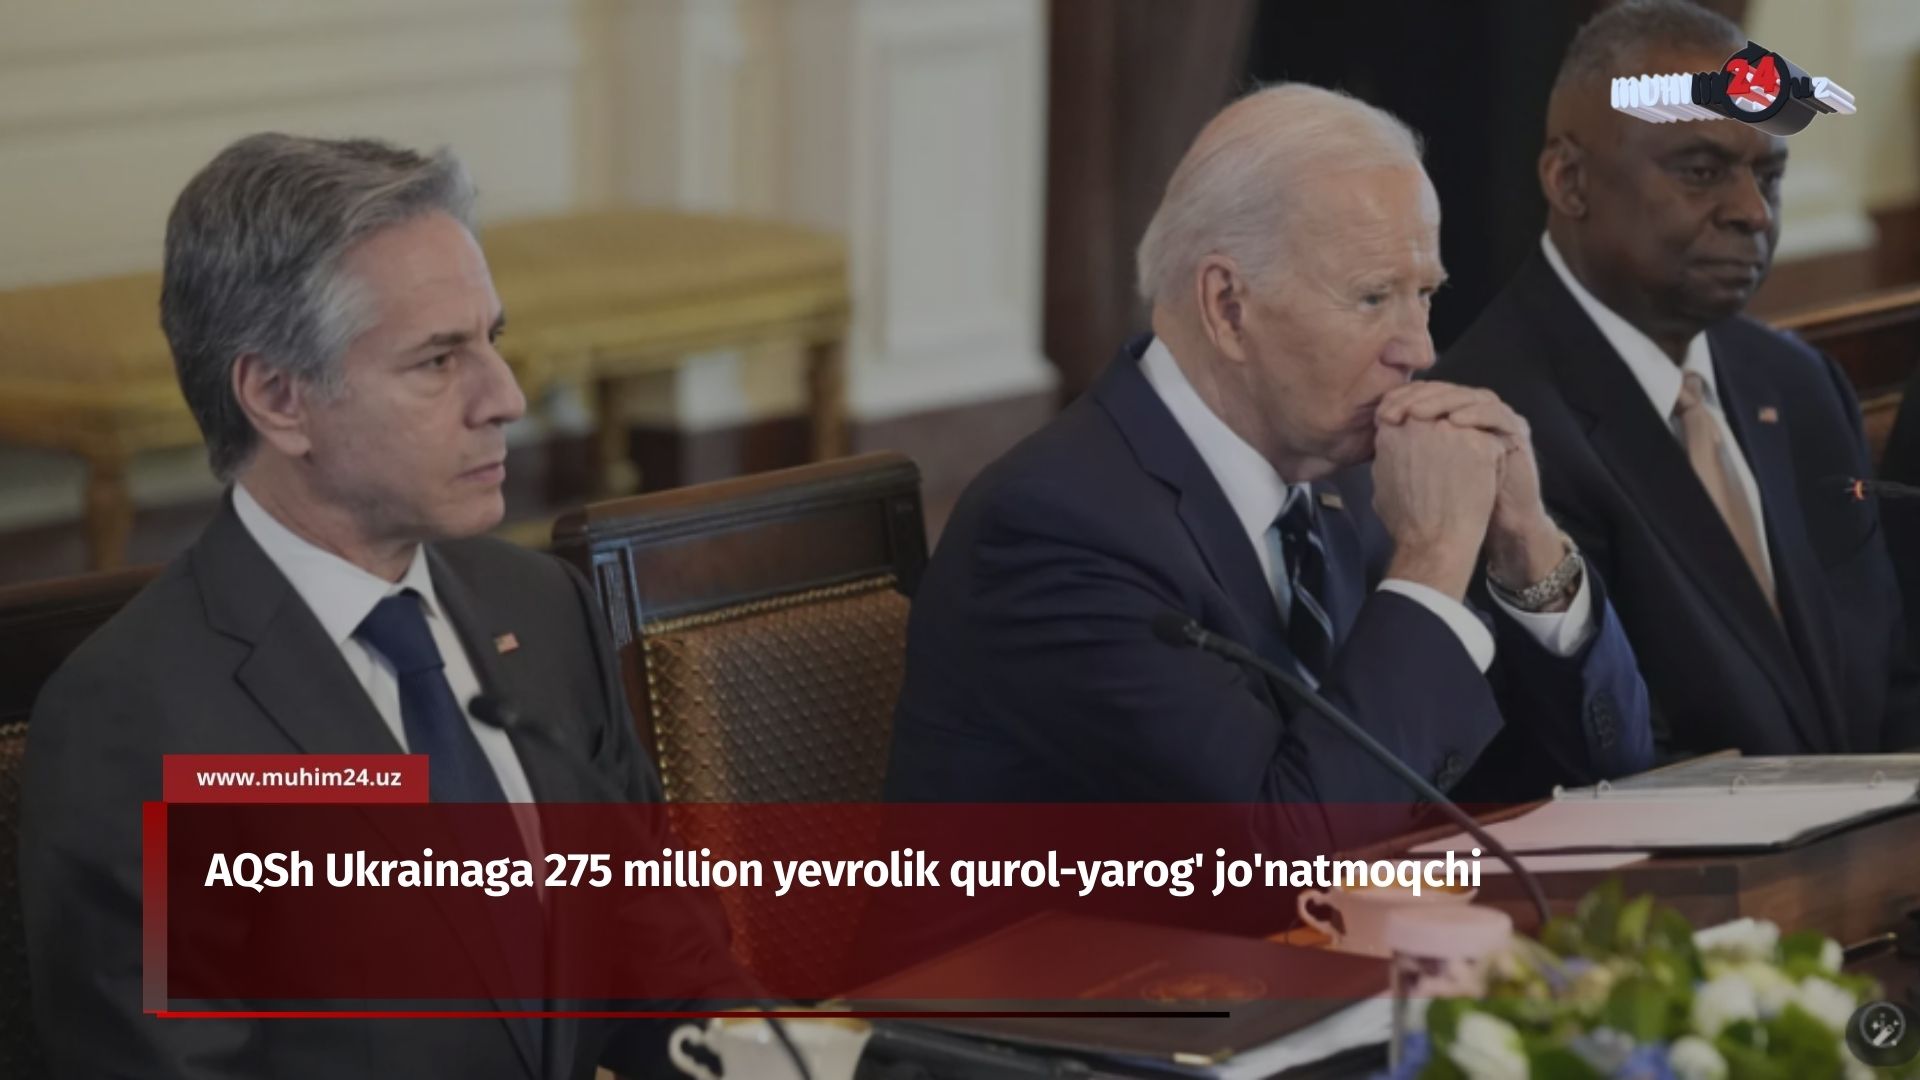 AQSh Ukrainaga 275 million yevrolik qurol-yarog’ jo’natmoqchi